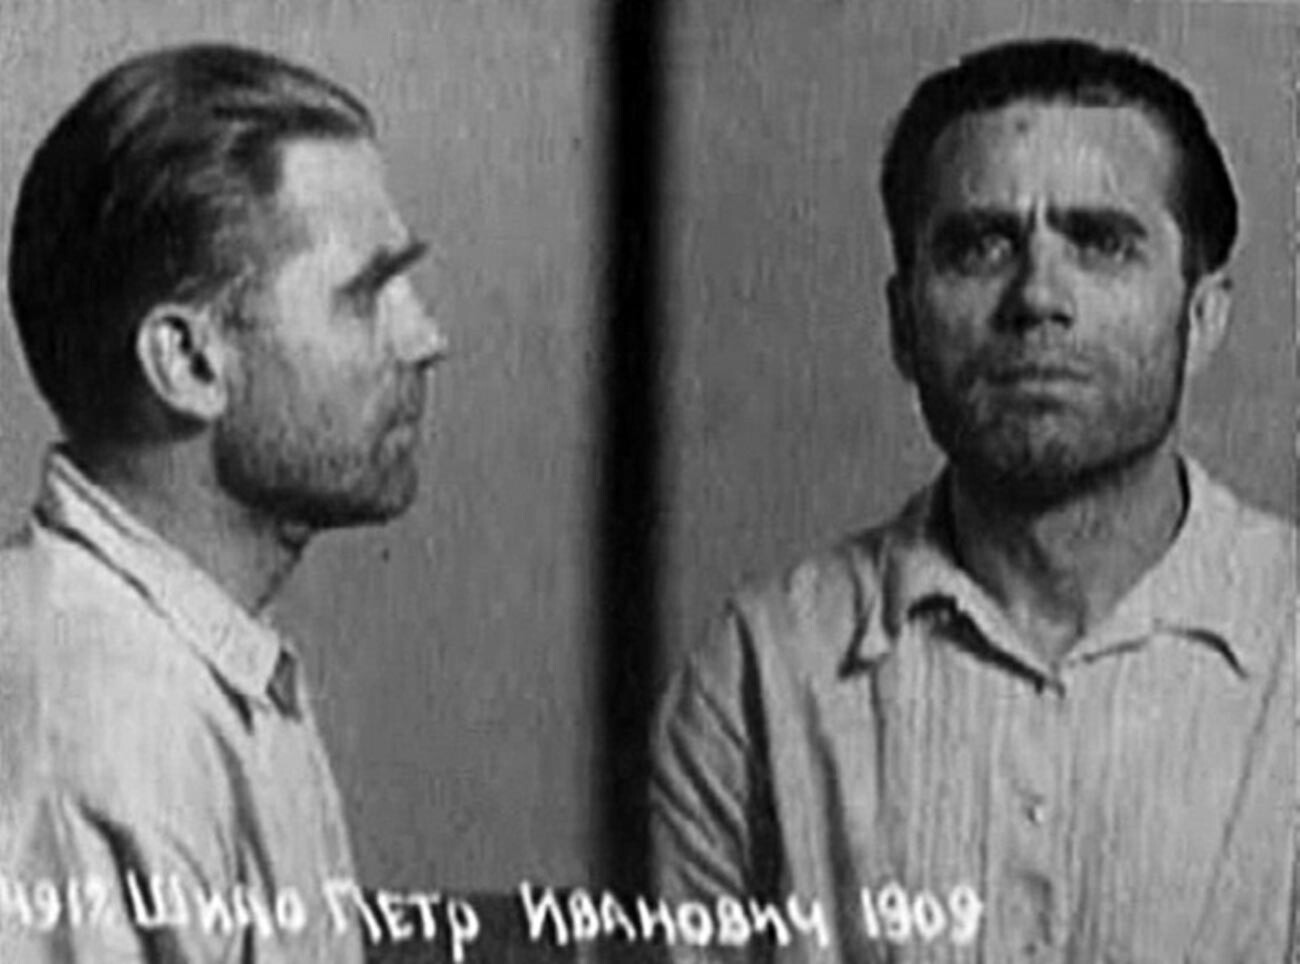 Távrin após ser detido pelos soviéticos